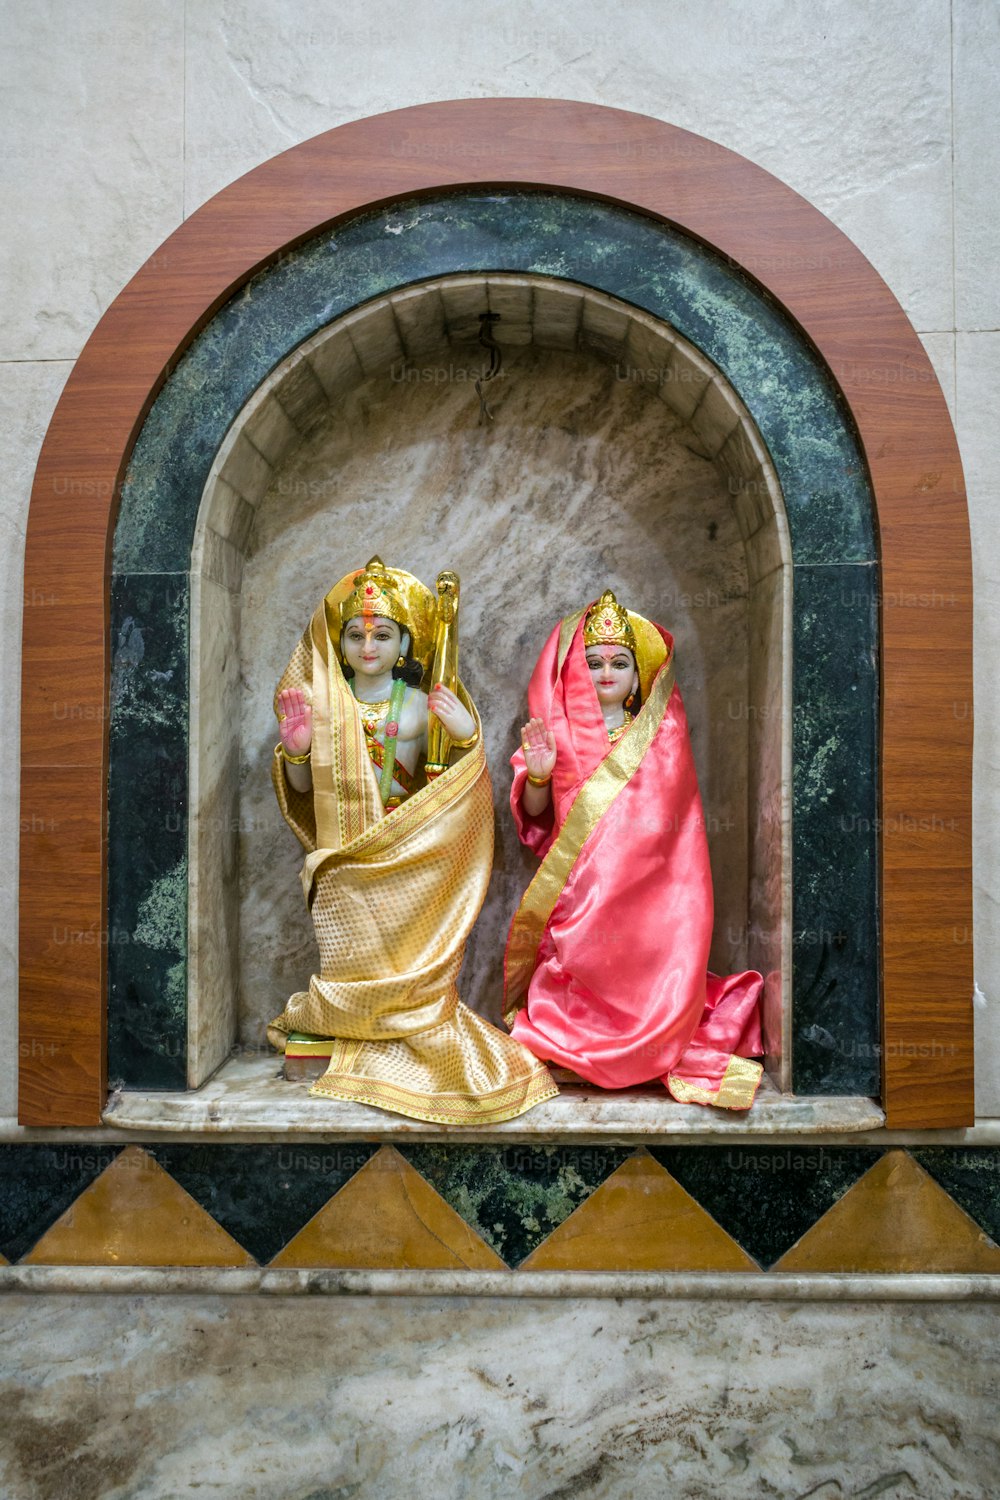 Eine Statue von zwei Frauen in einer Nische